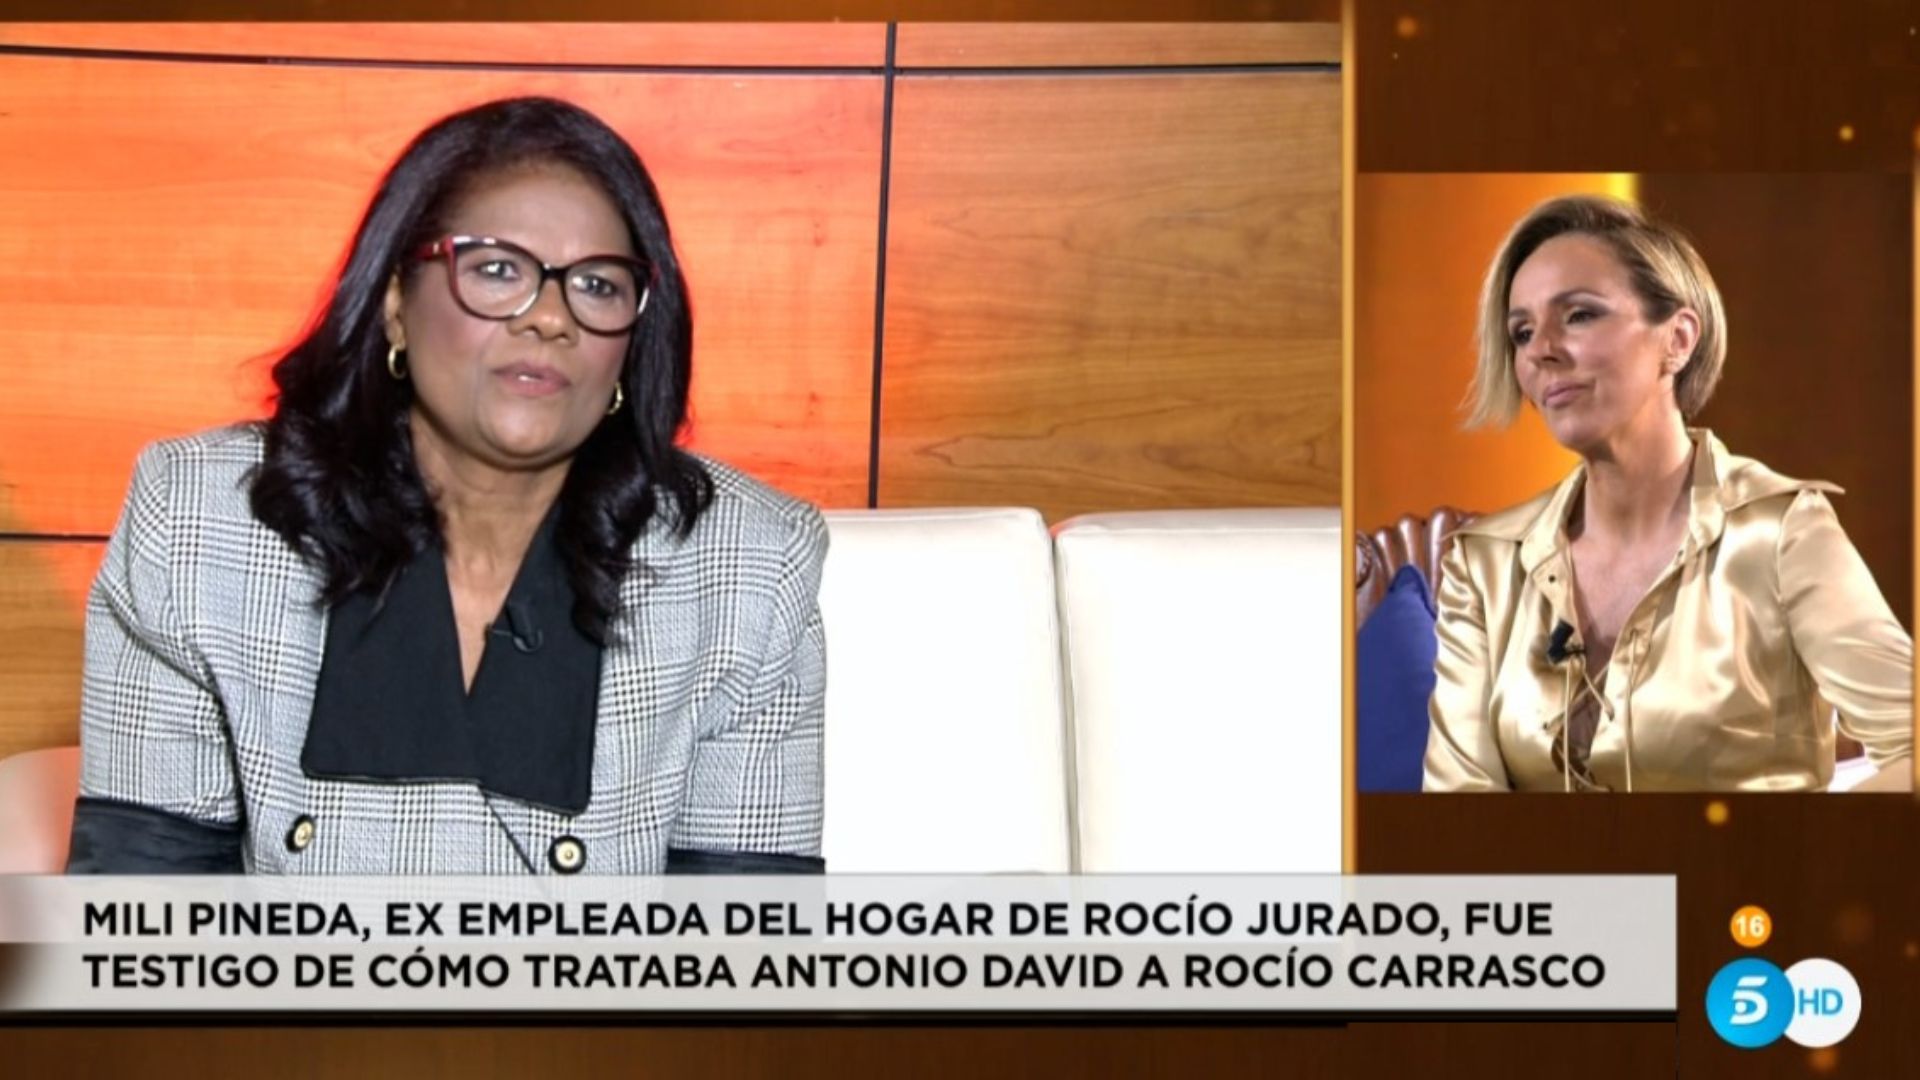 Mili Pineda, exempleada de hogar de Rocío Jurado, habla del trato de Antonio David a Rocío Carrasco